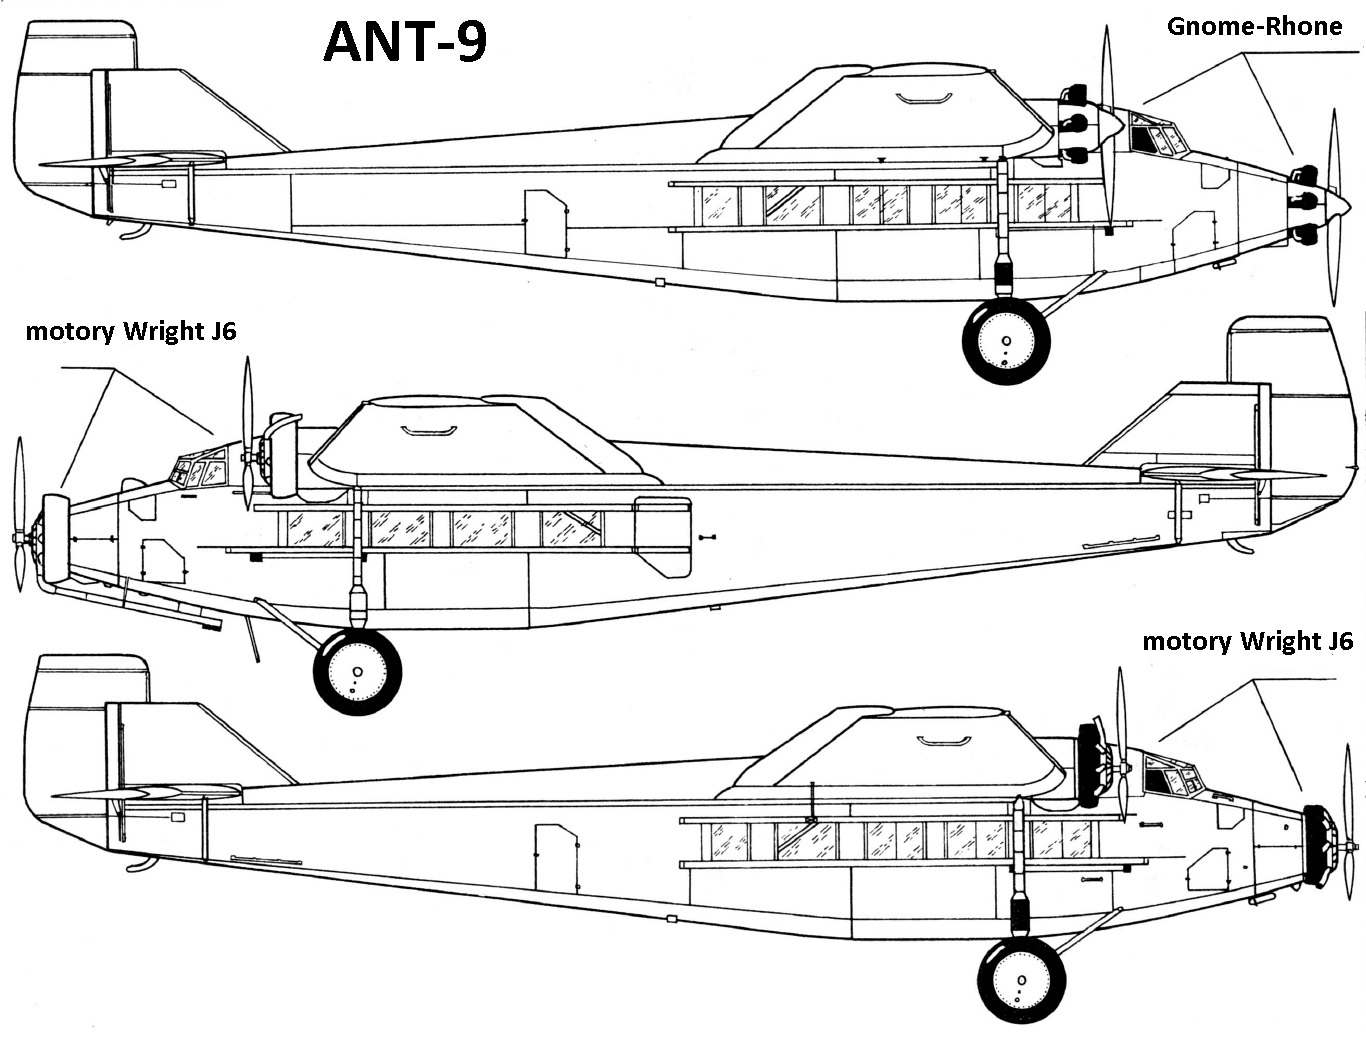 Tupolev ANT-9 : Tupolev